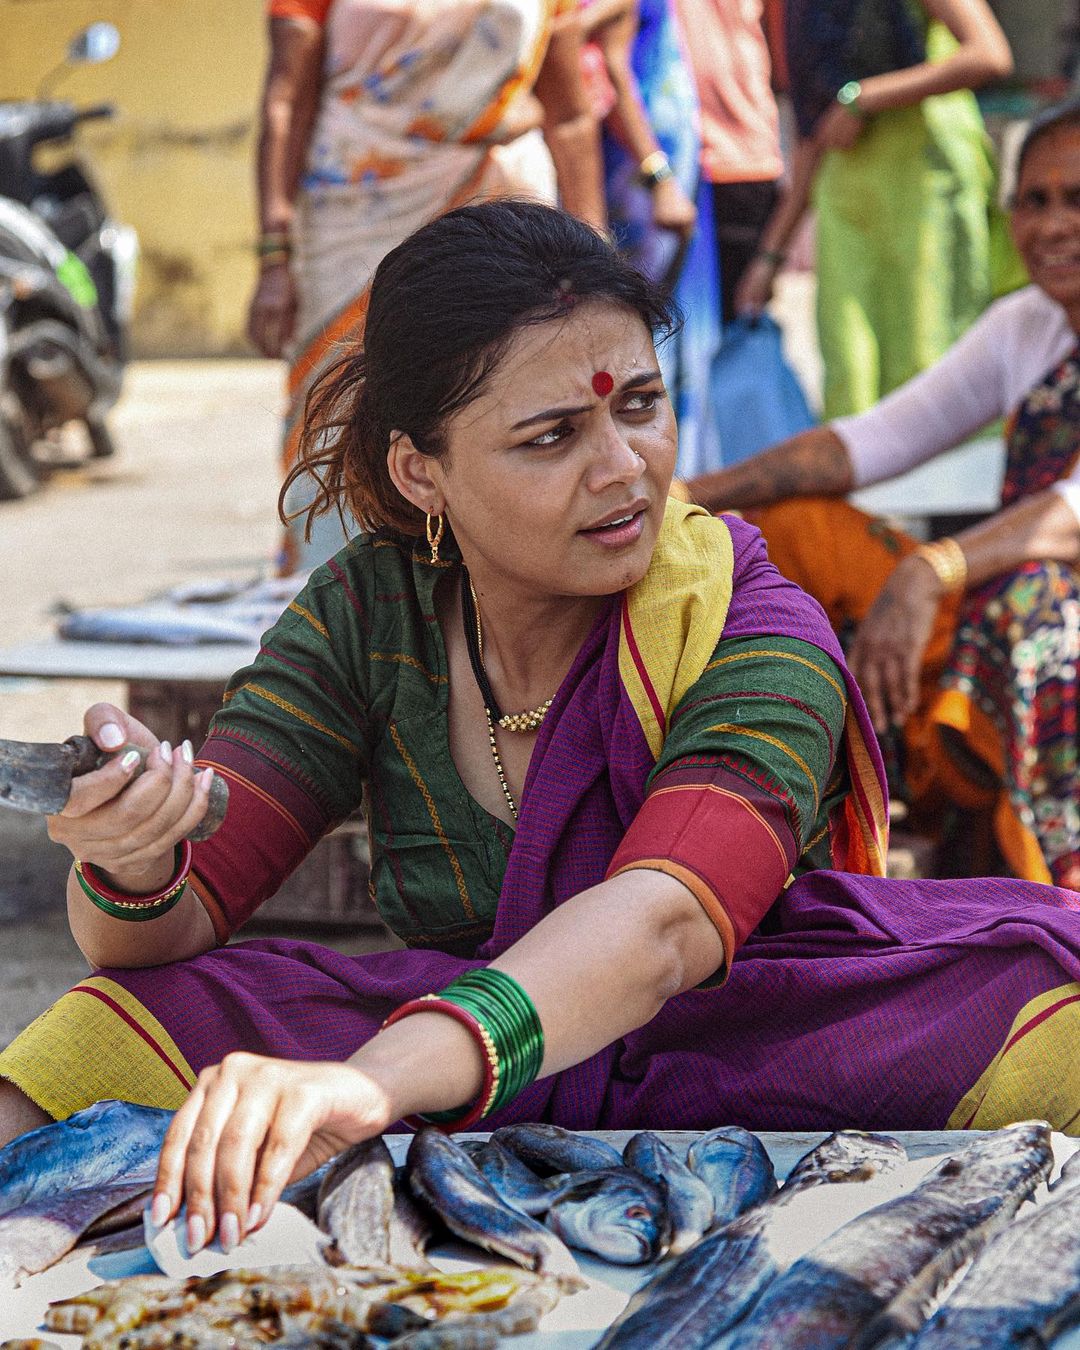 "सौ. सुषमा माळी, जसं लग्न झालं, तसं ती नवऱ्यासोबत मासेविक्री करते. संसार उभा करत देशाच्या अर्थव्यस्थेला उभी करणारी नारी."